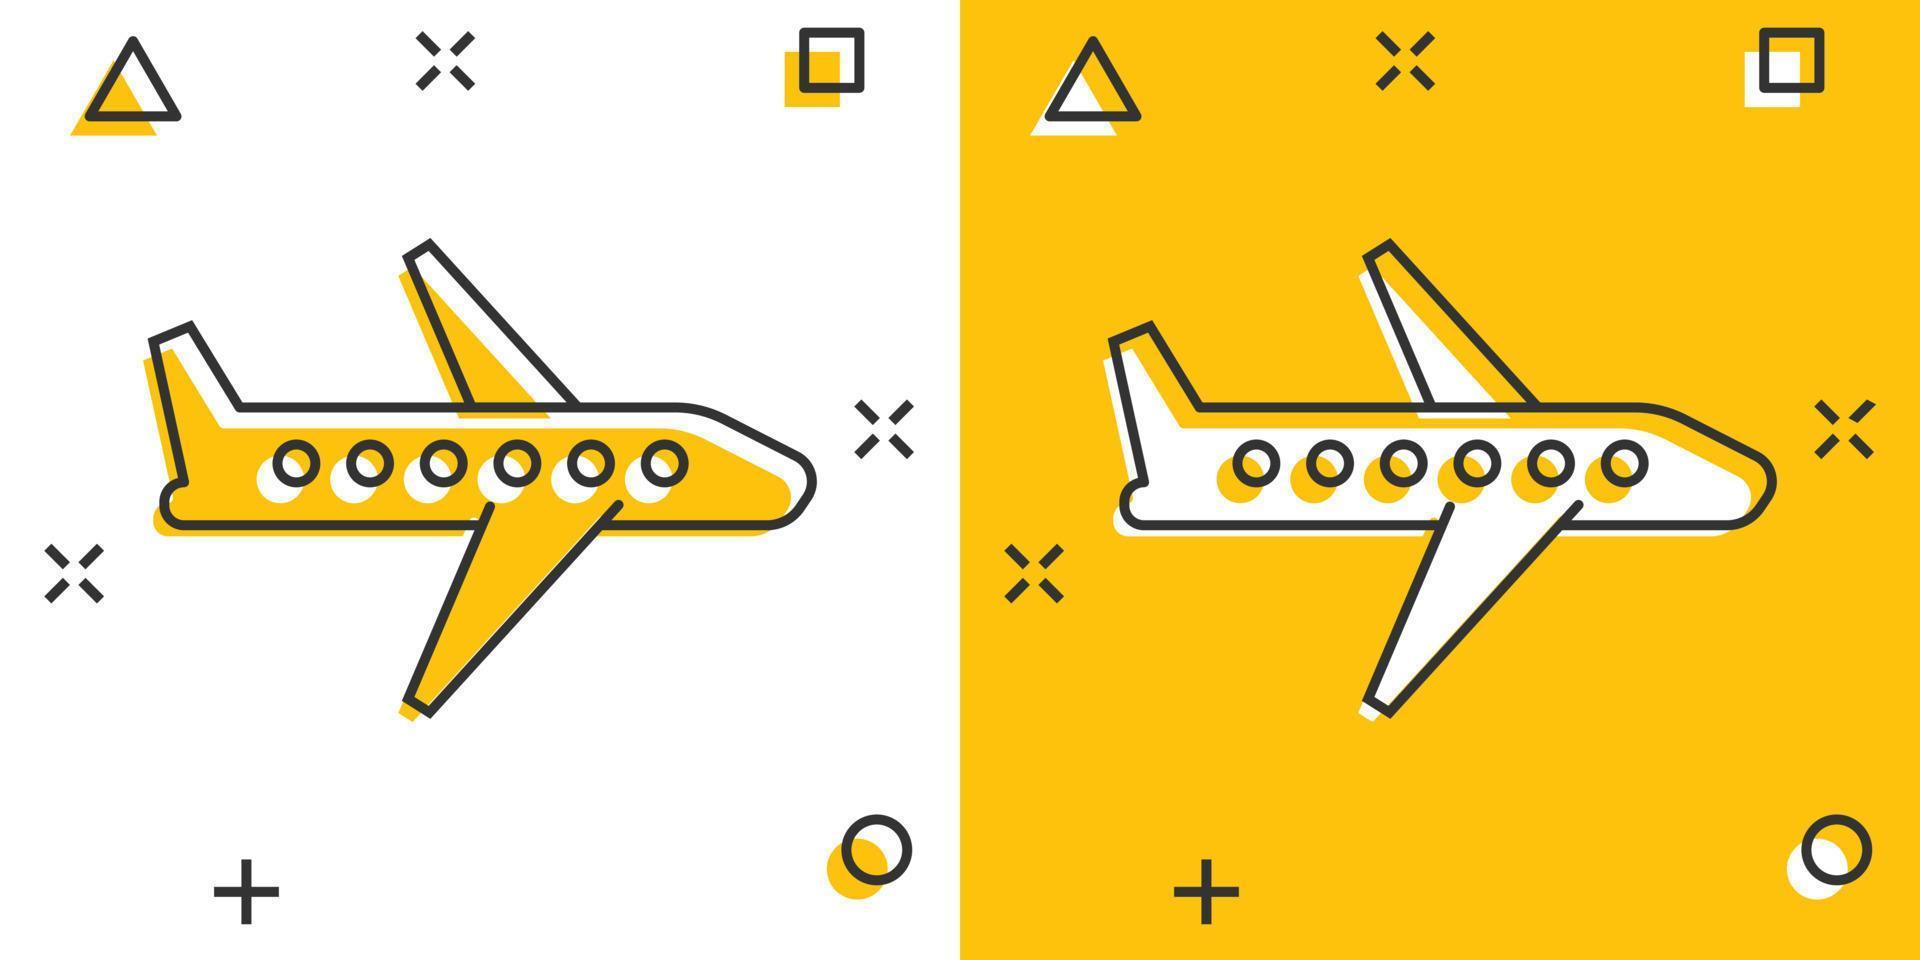 Flugzeug-Symbol im Comic-Stil. Flugzeugkarikatur-Vektorillustration auf weißem lokalisiertem Hintergrund. Geschäftskonzept mit Splash-Effekt für Fluglinienflugzeuge. vektor